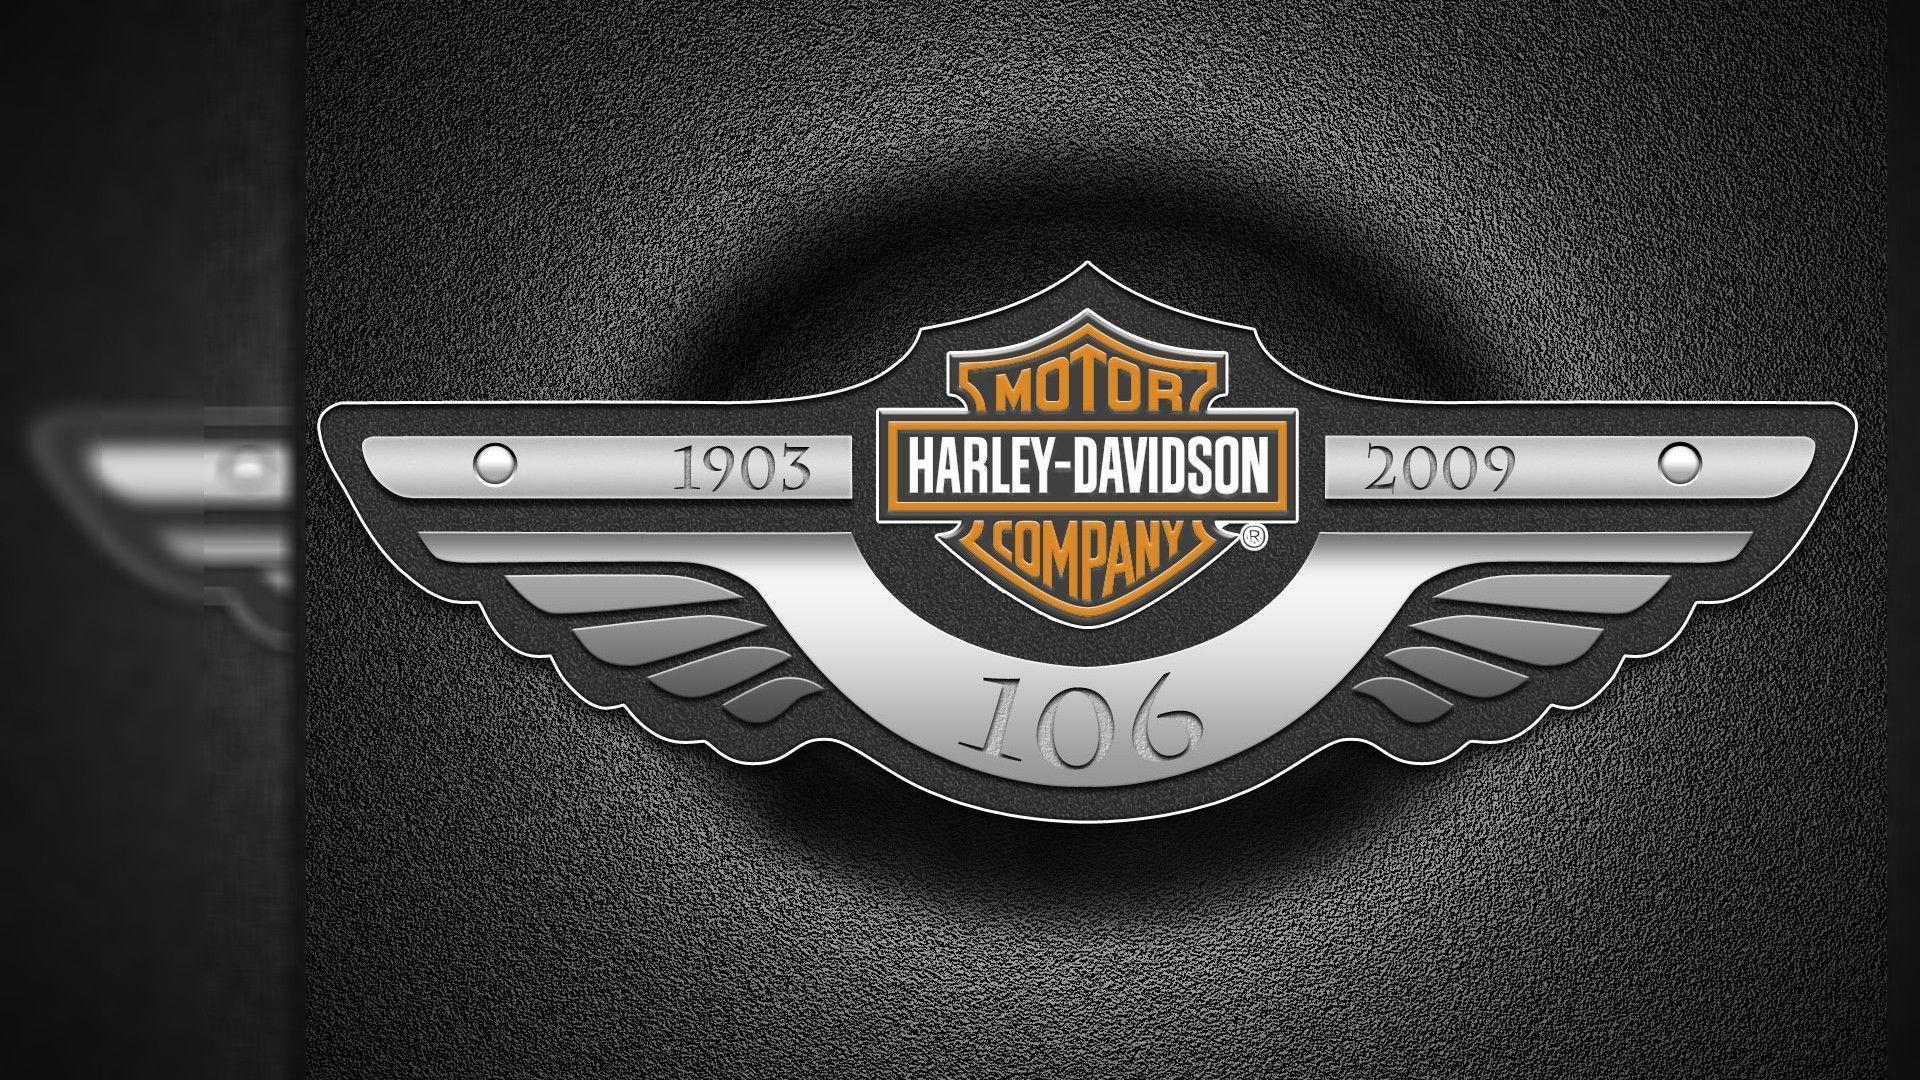 Harley Davidson Background For Desktop